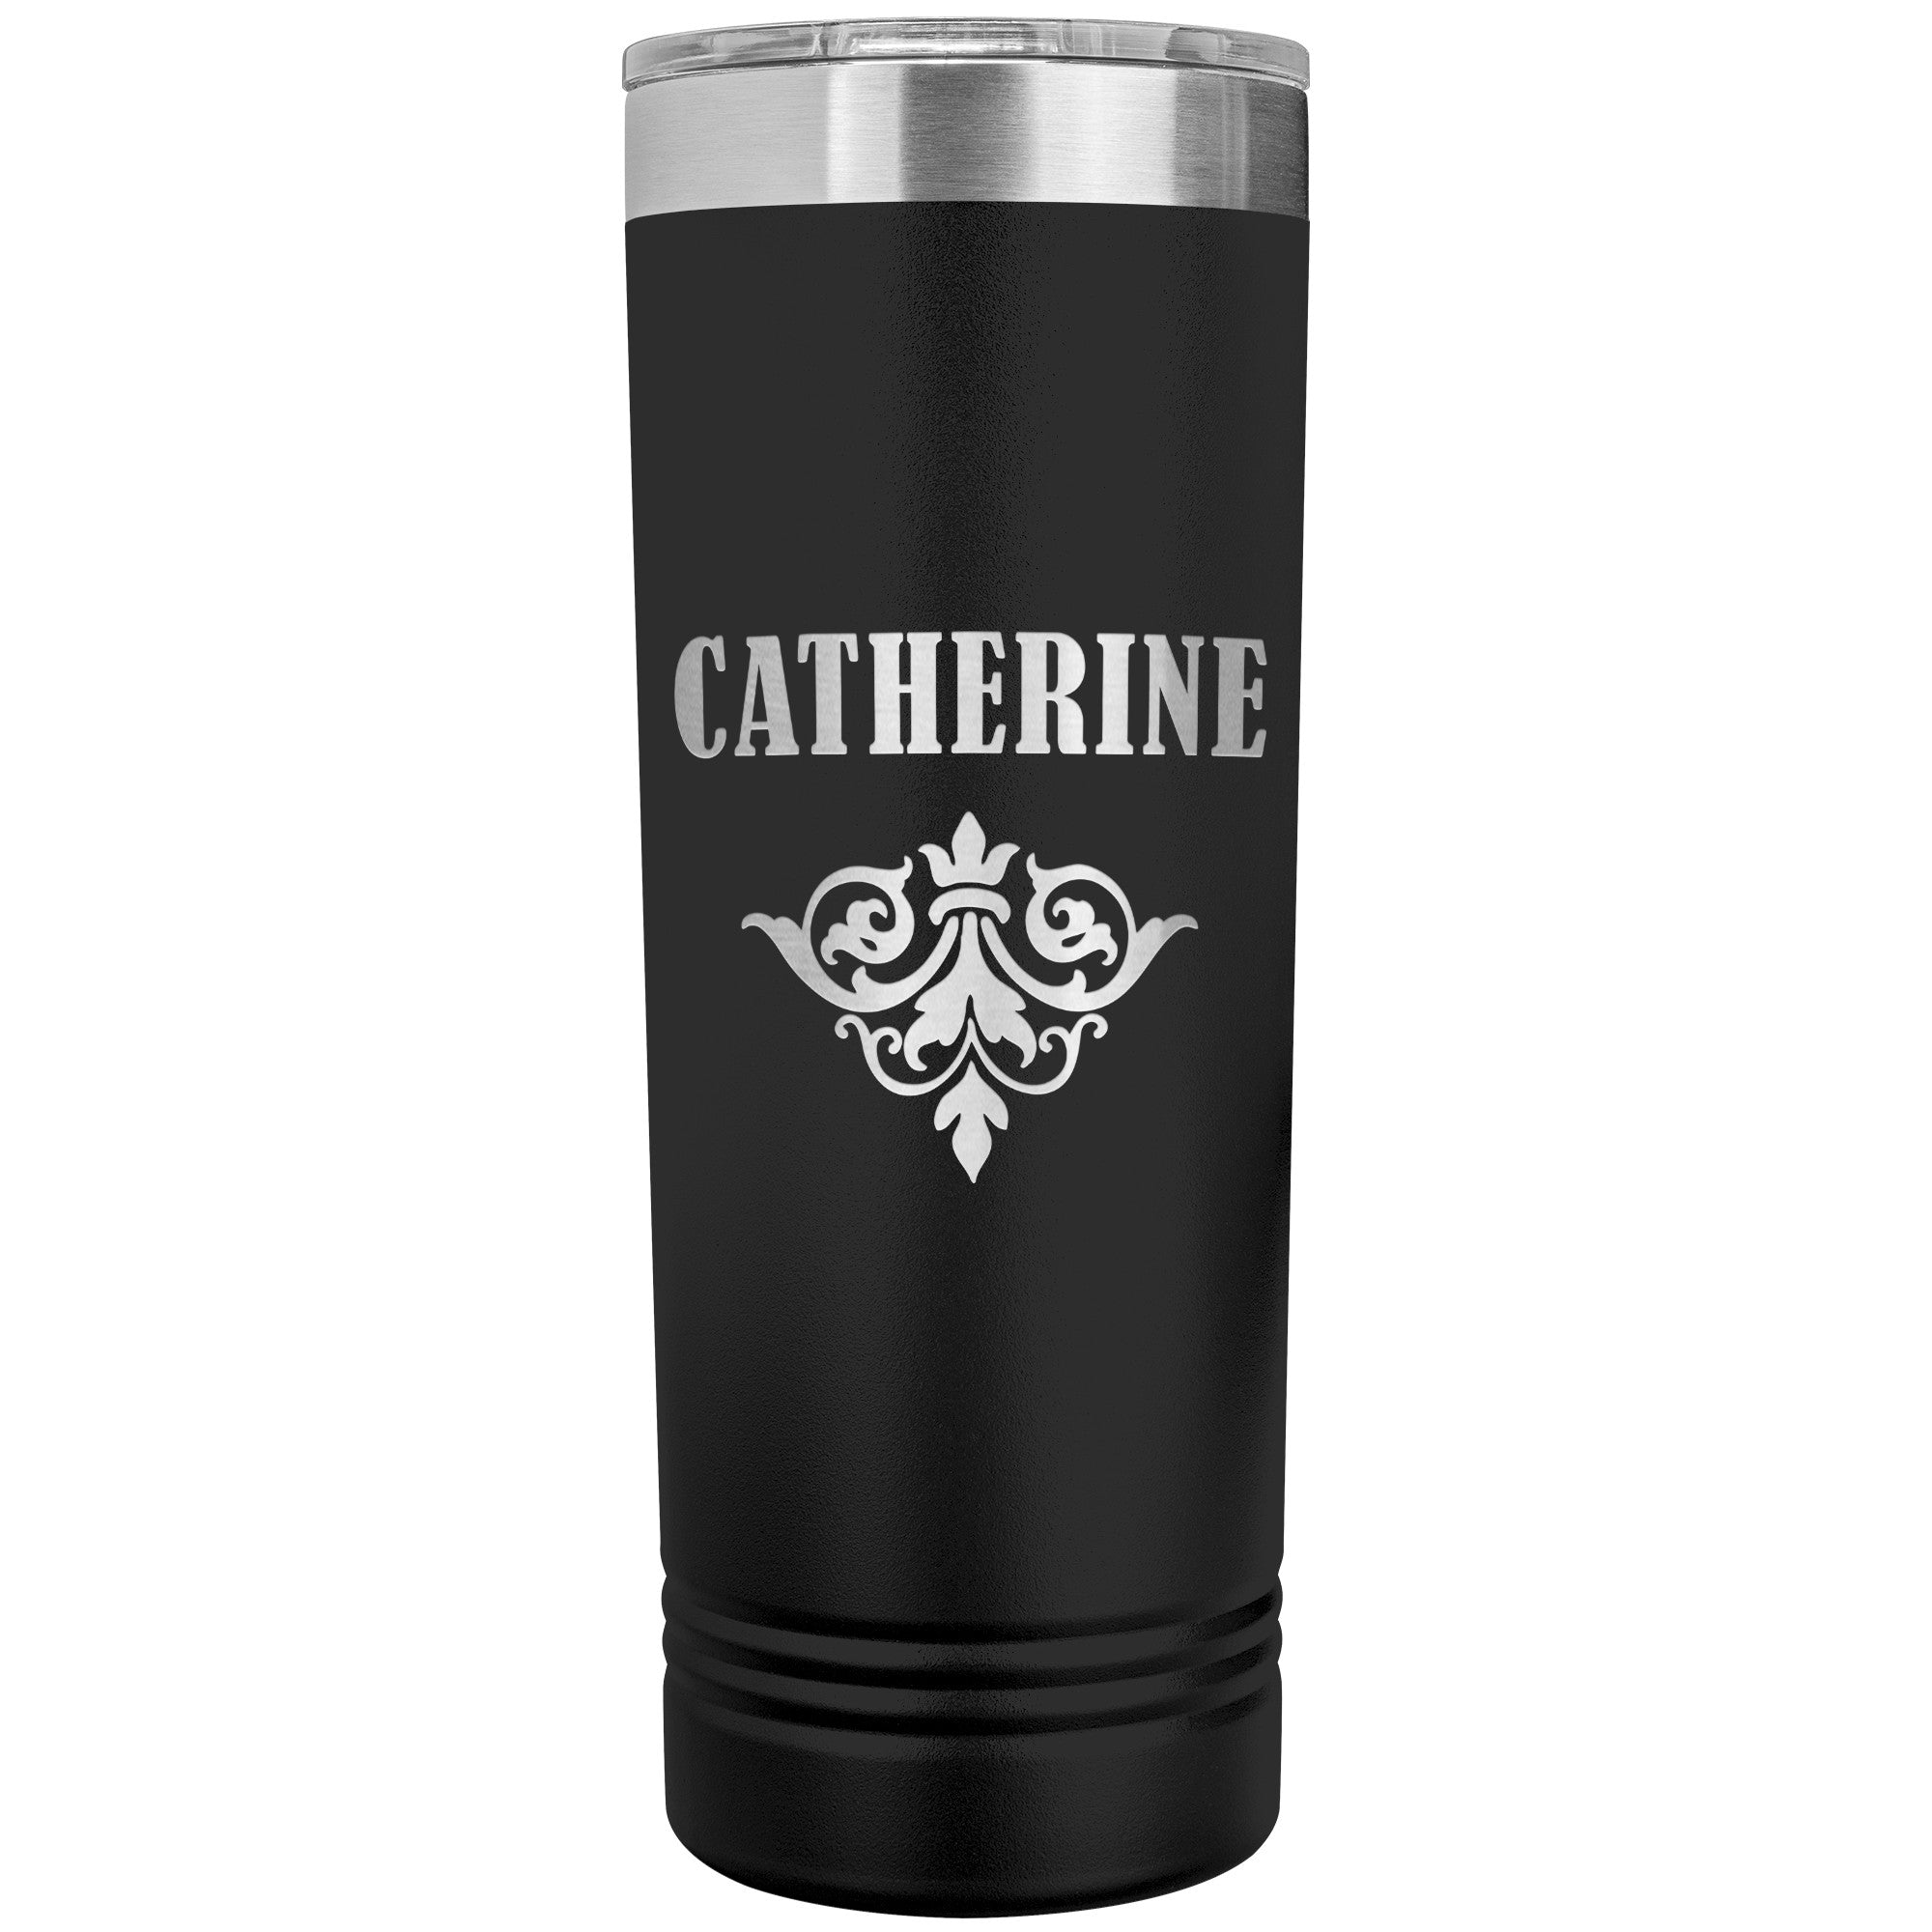 Catherine v01 - 22oz Insulated Skinny Tumbler